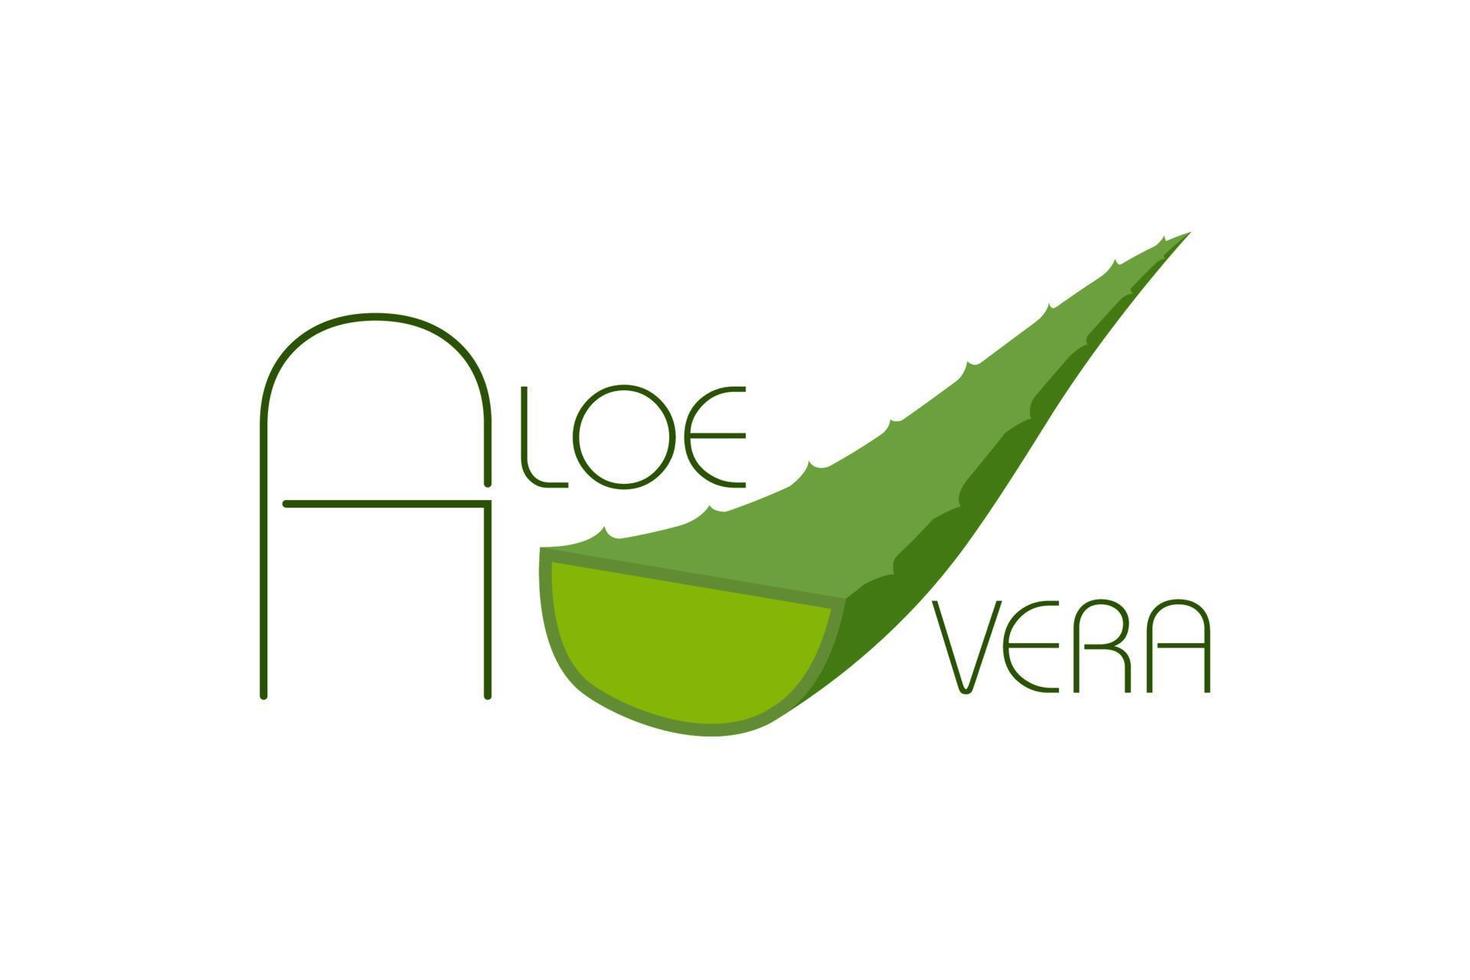 Aloe Vera grünes Logo-Symbol für natürliches Bio-Produktverpackungsetikett. Aloe Vera Blattzeichen für Kosmetik- oder Feuchtigkeitscreme-Verpackungsdesign-Vorlage. Vektor isoliert auf weißem Hintergrund